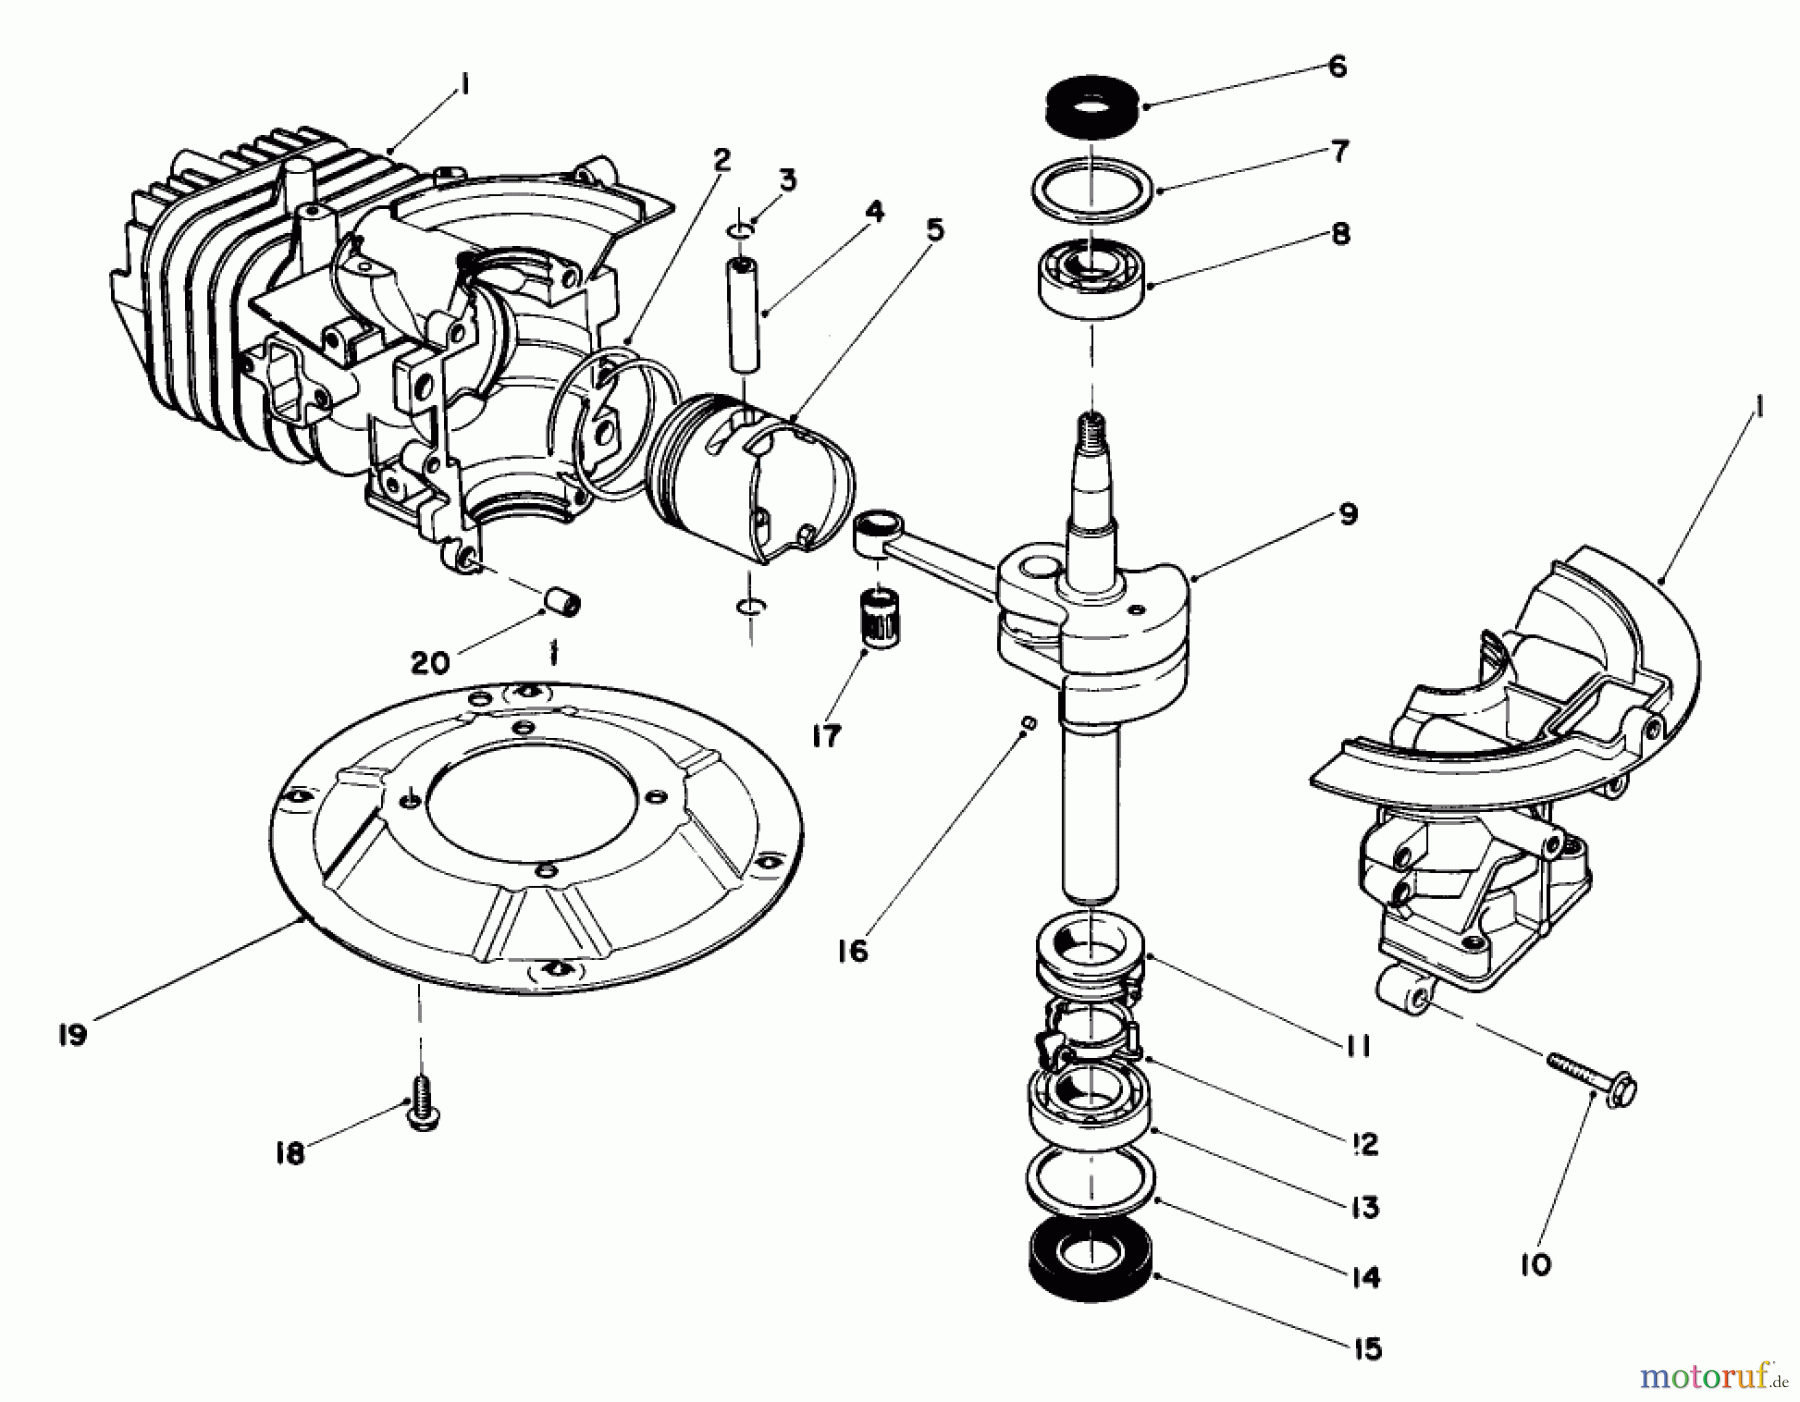  Toro Neu Mowers, Walk-Behind Seite 2 22035 - Toro Lawnmower, 1987 (7000001-7999999) ENGINE ASSEMBLY MODEL NO. 47PG6 #1